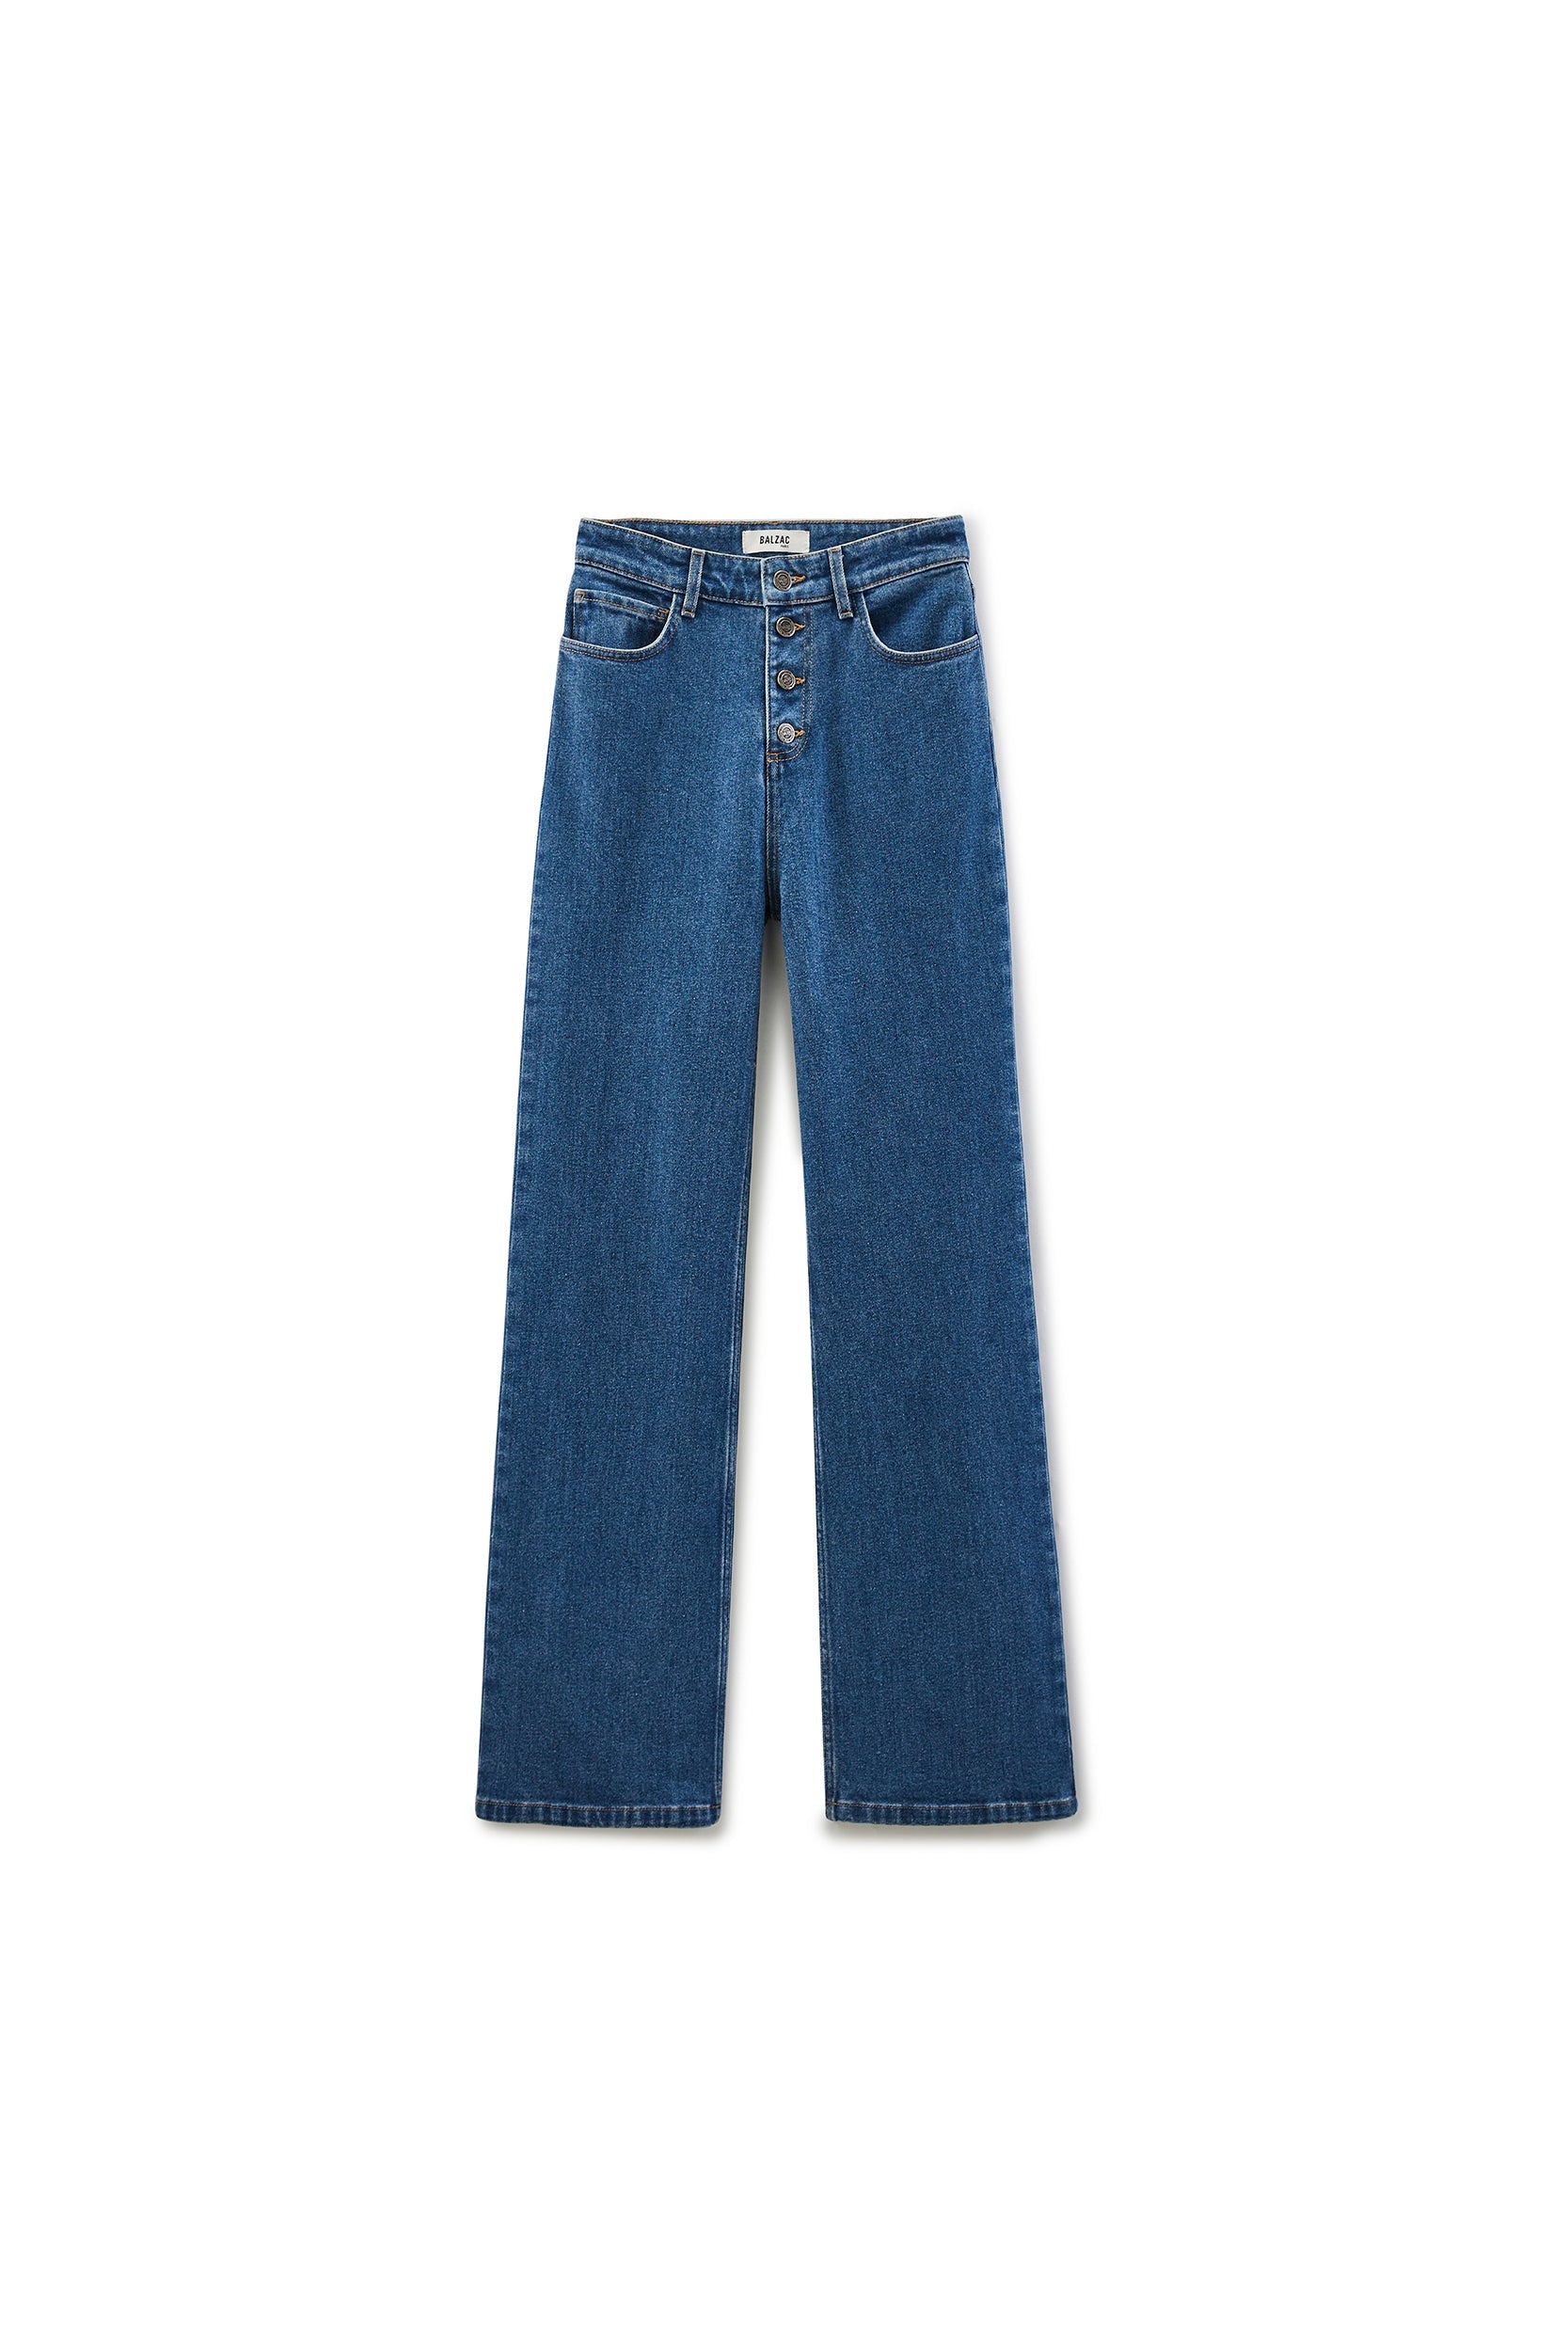 Mineral blue Citadelle jeans